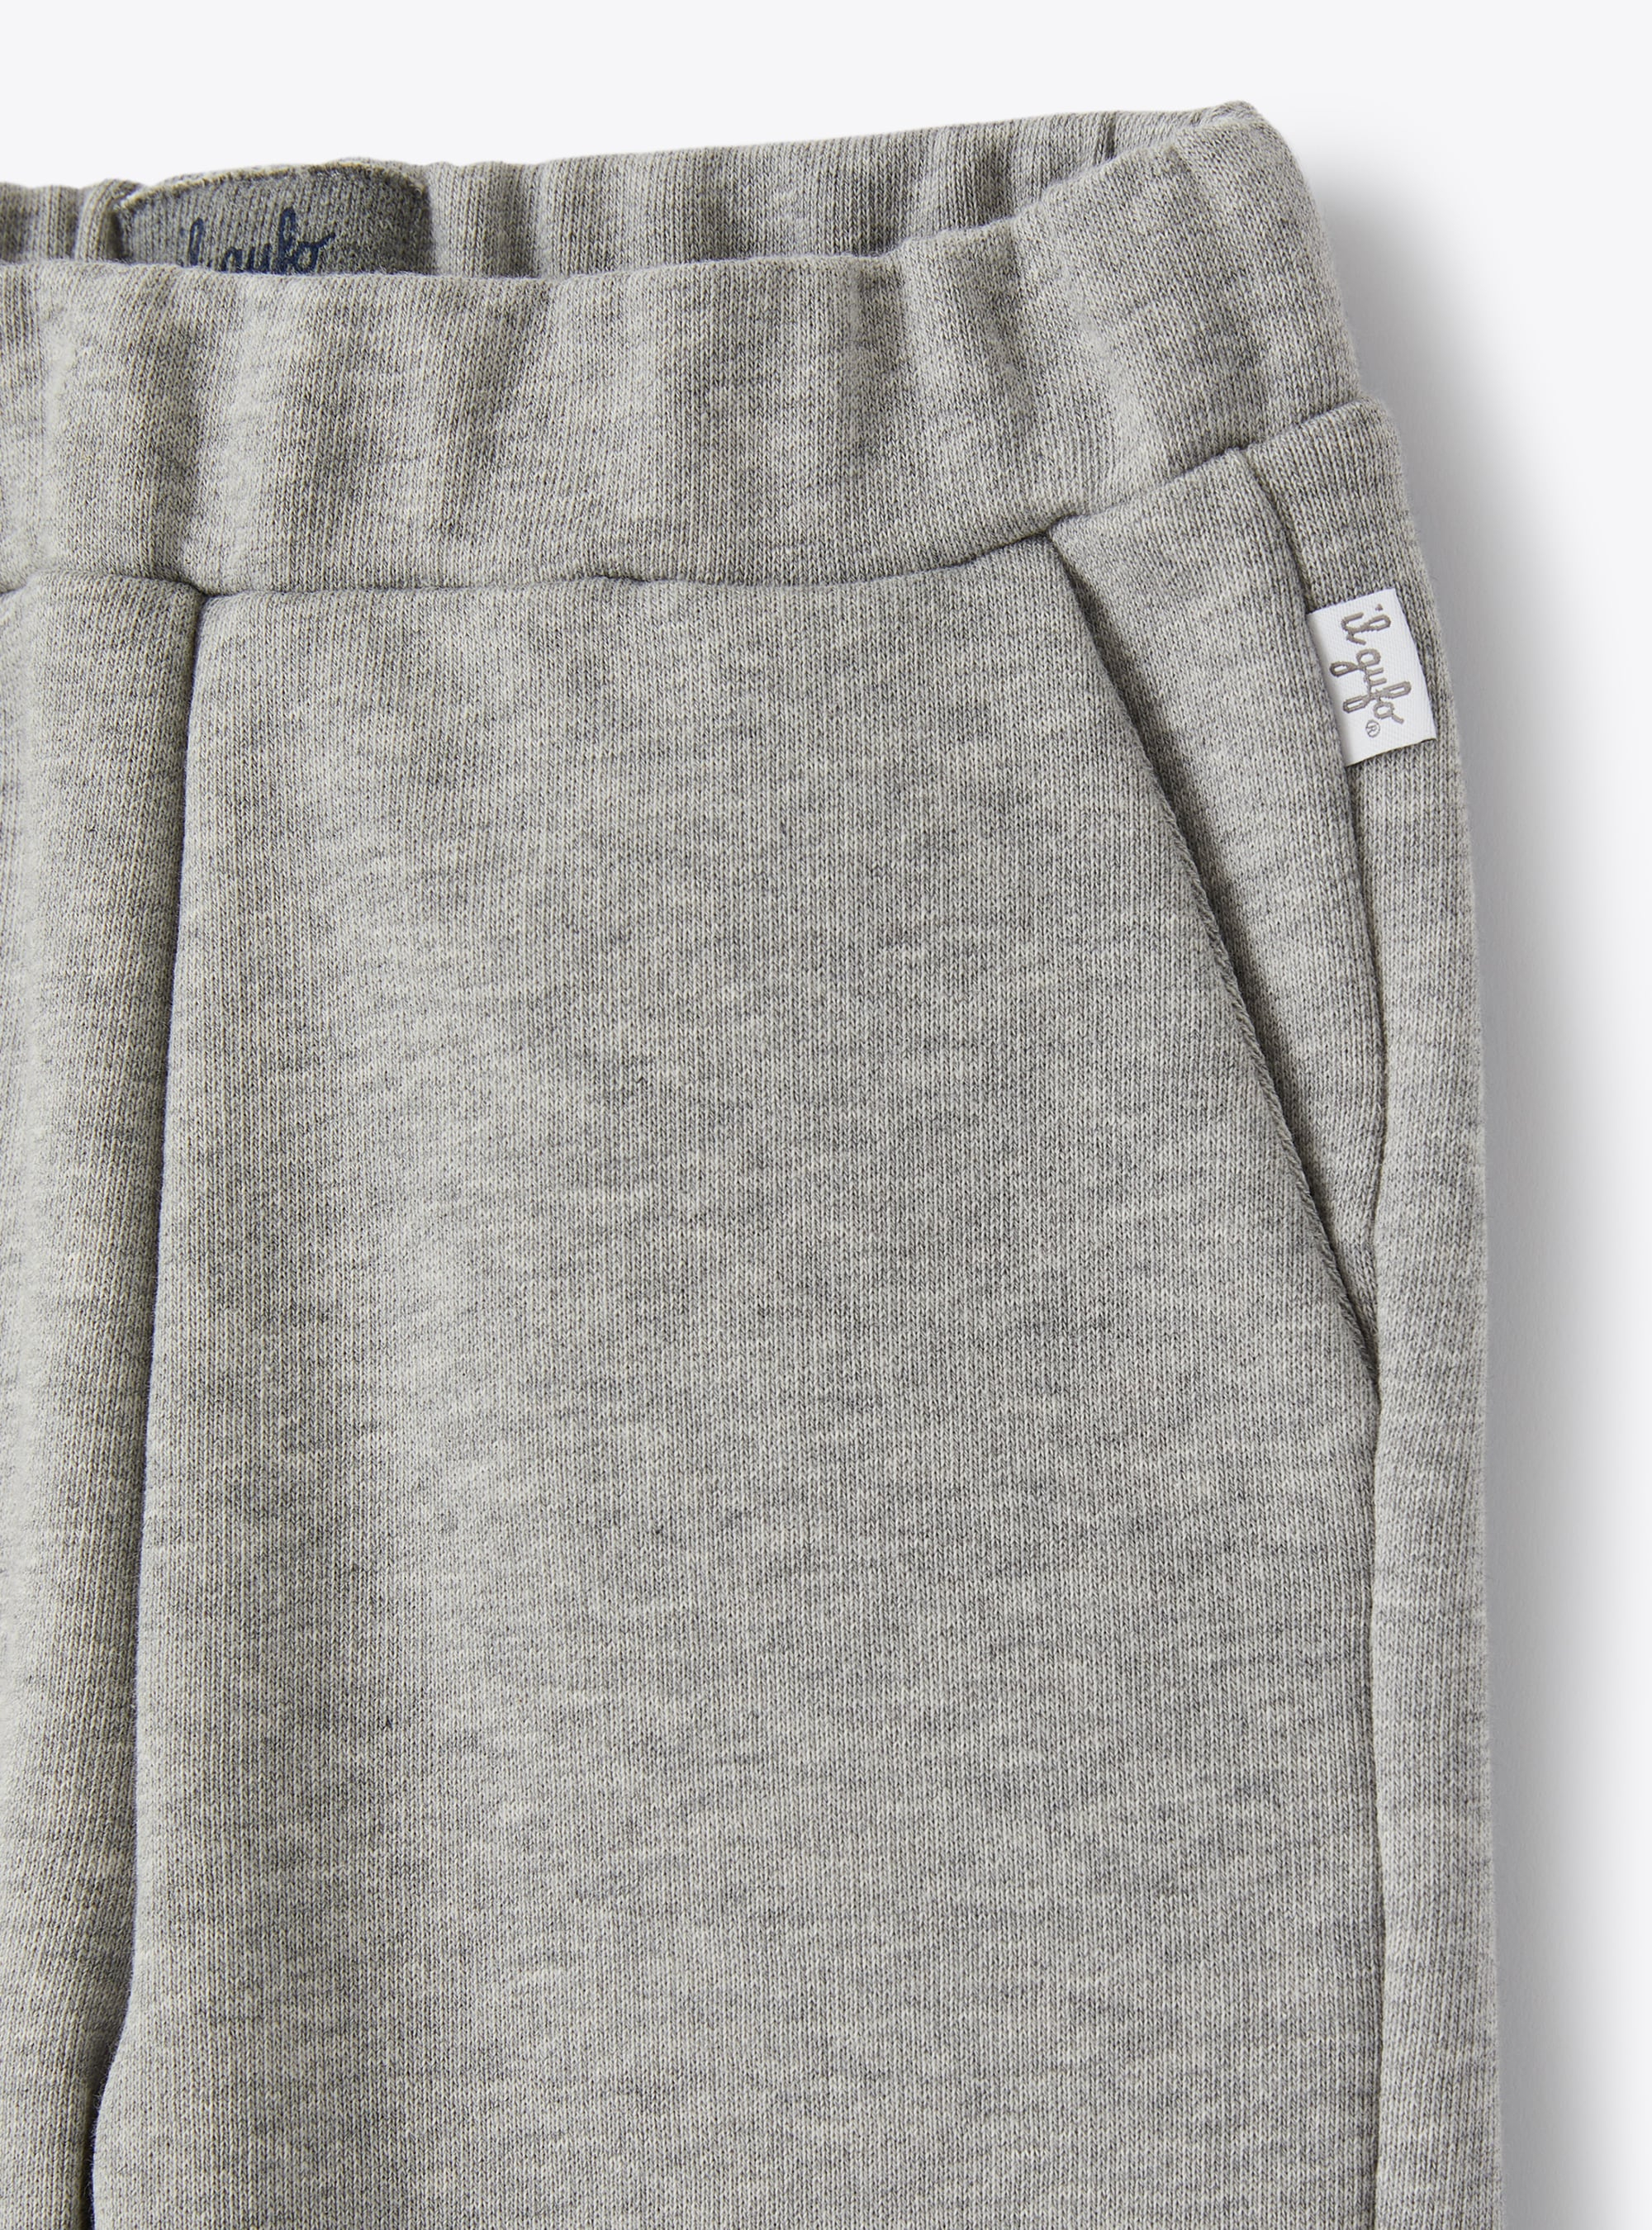 Jogginghose aus Baumwoll-Sweatstoff grau - Grau | Il Gufo